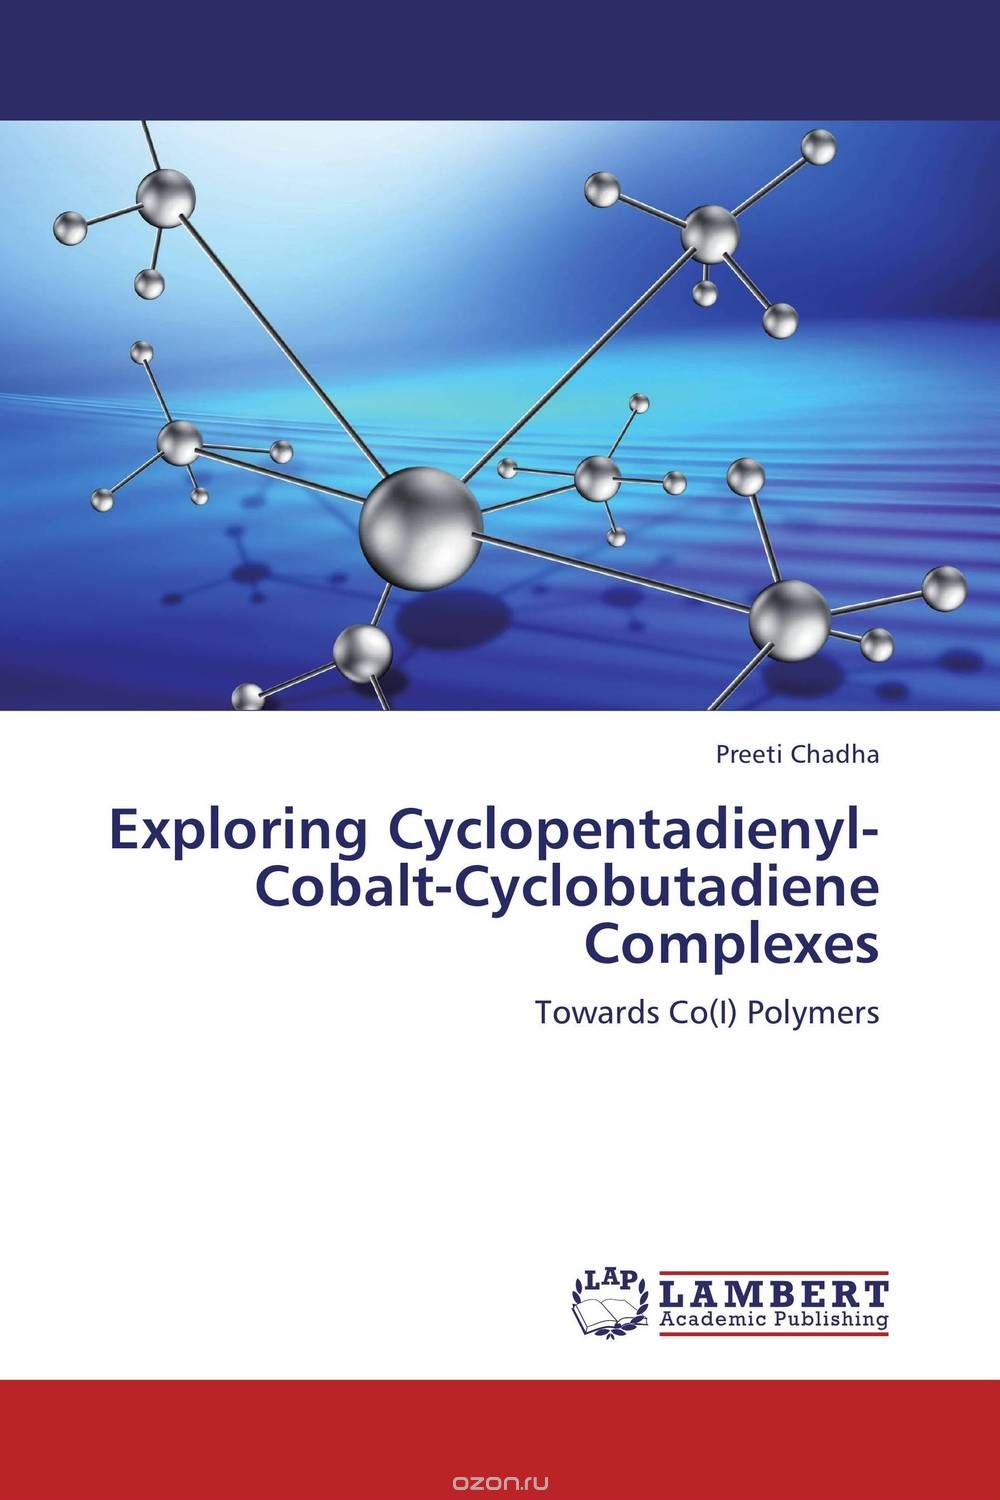 Скачать книгу "Exploring Cyclopentadienyl-Cobalt-Cyclobutadiene Complexes"